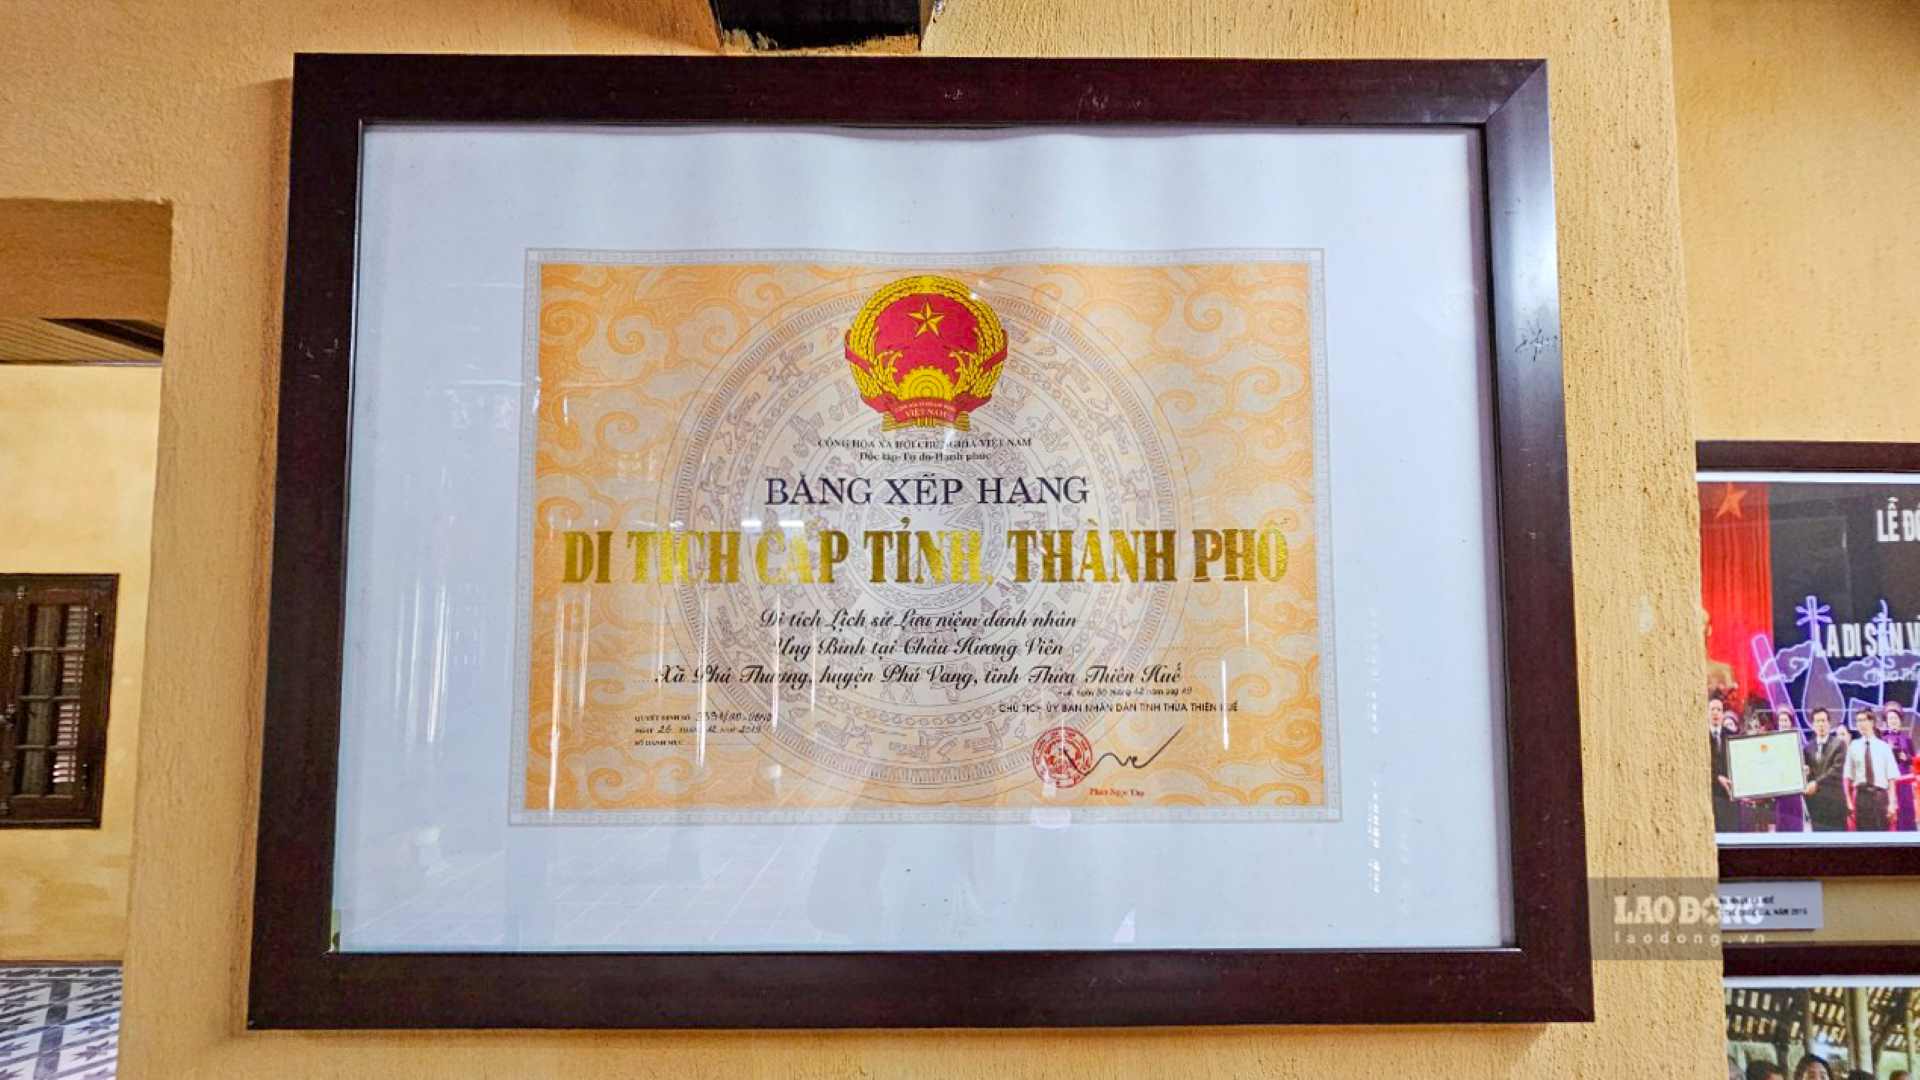 Trước đó, ngày 26.12.2019, UBND tỉnh Thừa Thiên Huế có Quyết định xếp hạng di tích Ưng Bình tại Châu Hương Viên là di tích lịch sử (lưu niệm danh nhân) cấp Tỉnh. 